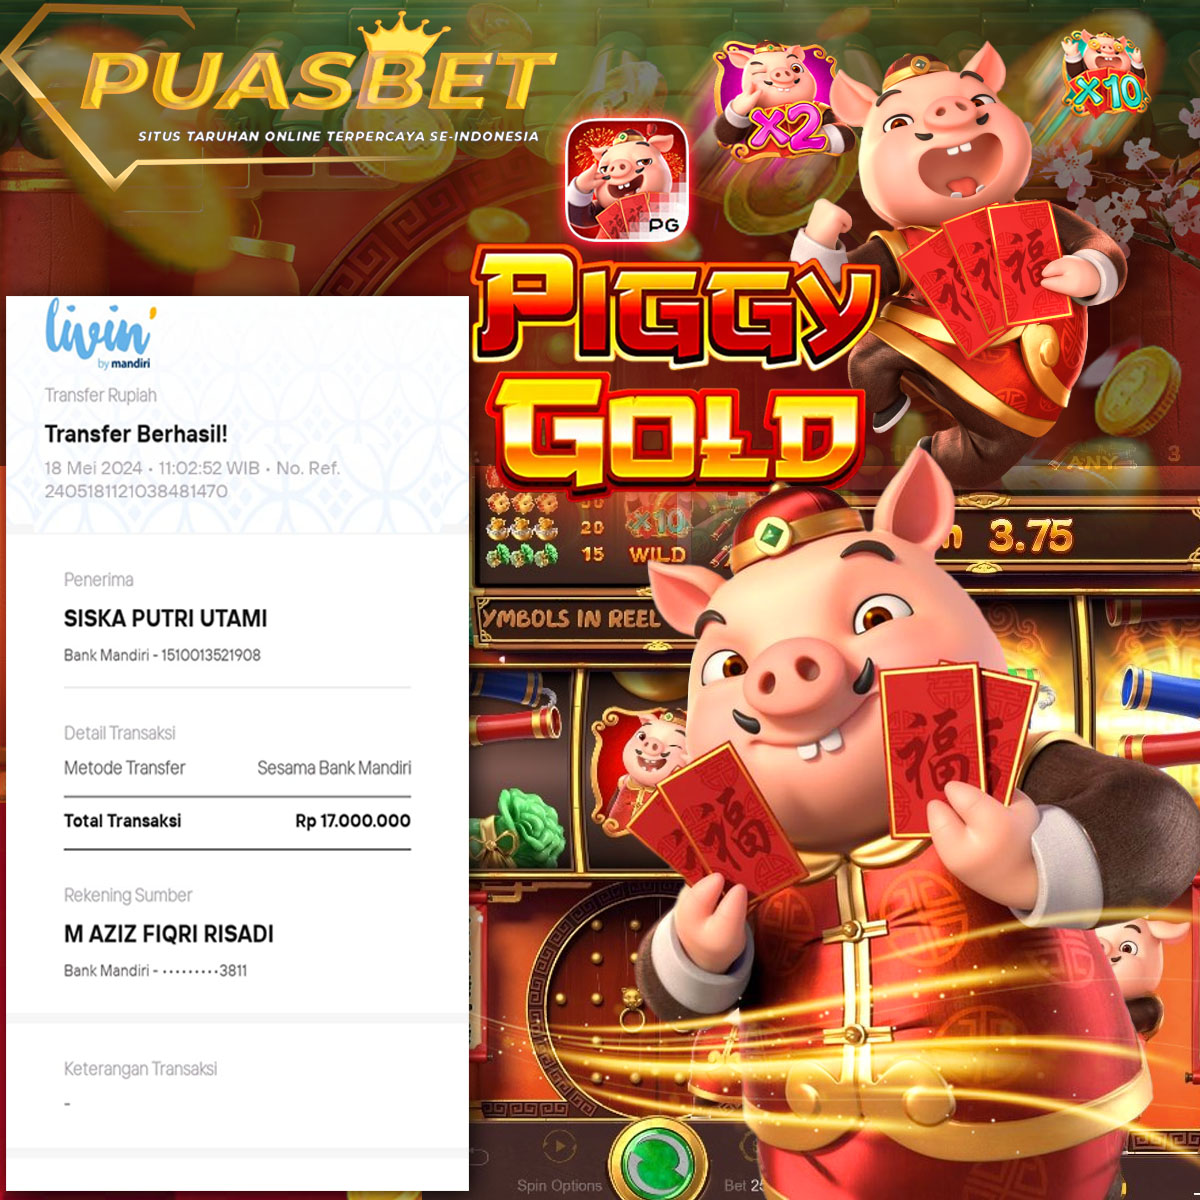 BUKTI WD PUASBET 18 MAY 2024 ( Piggy Gold ) Rp.17,000,000 – LUNAS)